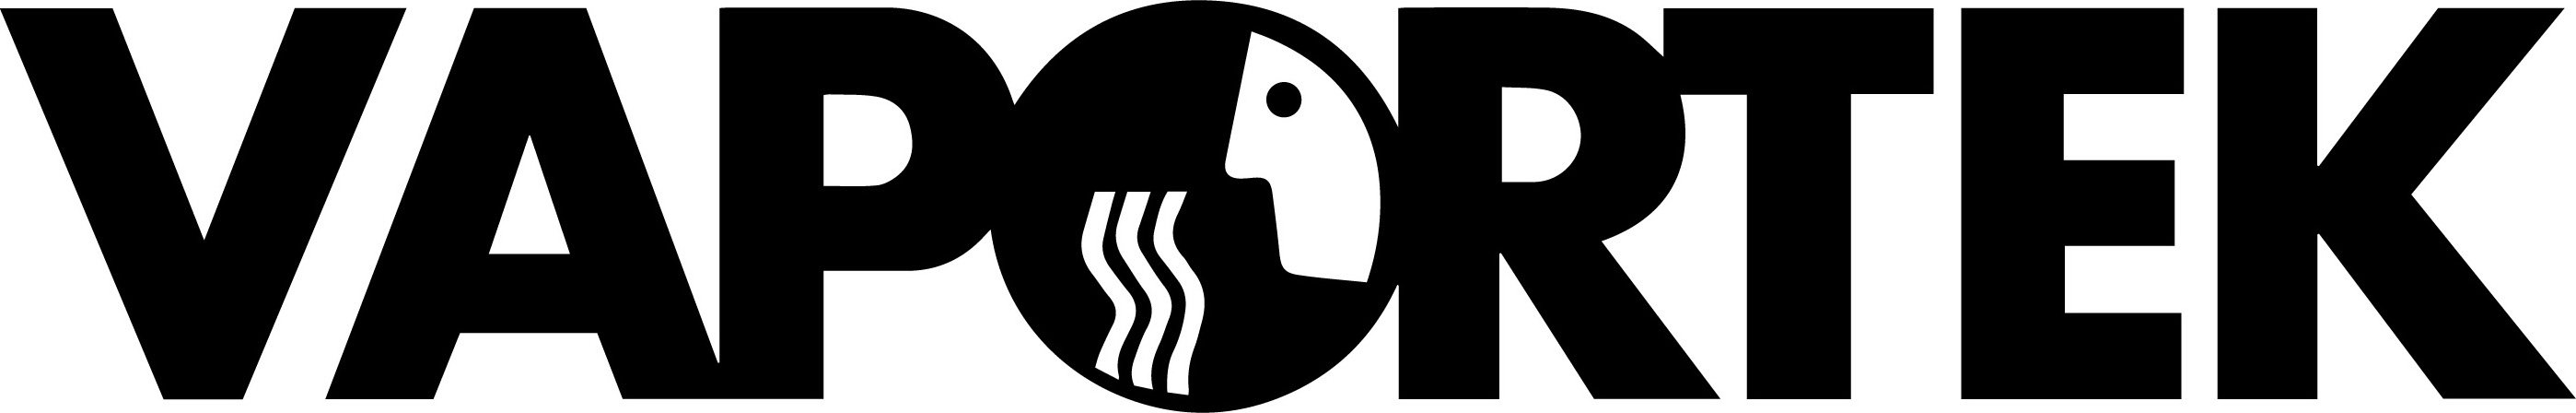 Trademark Logo VAPORTEK